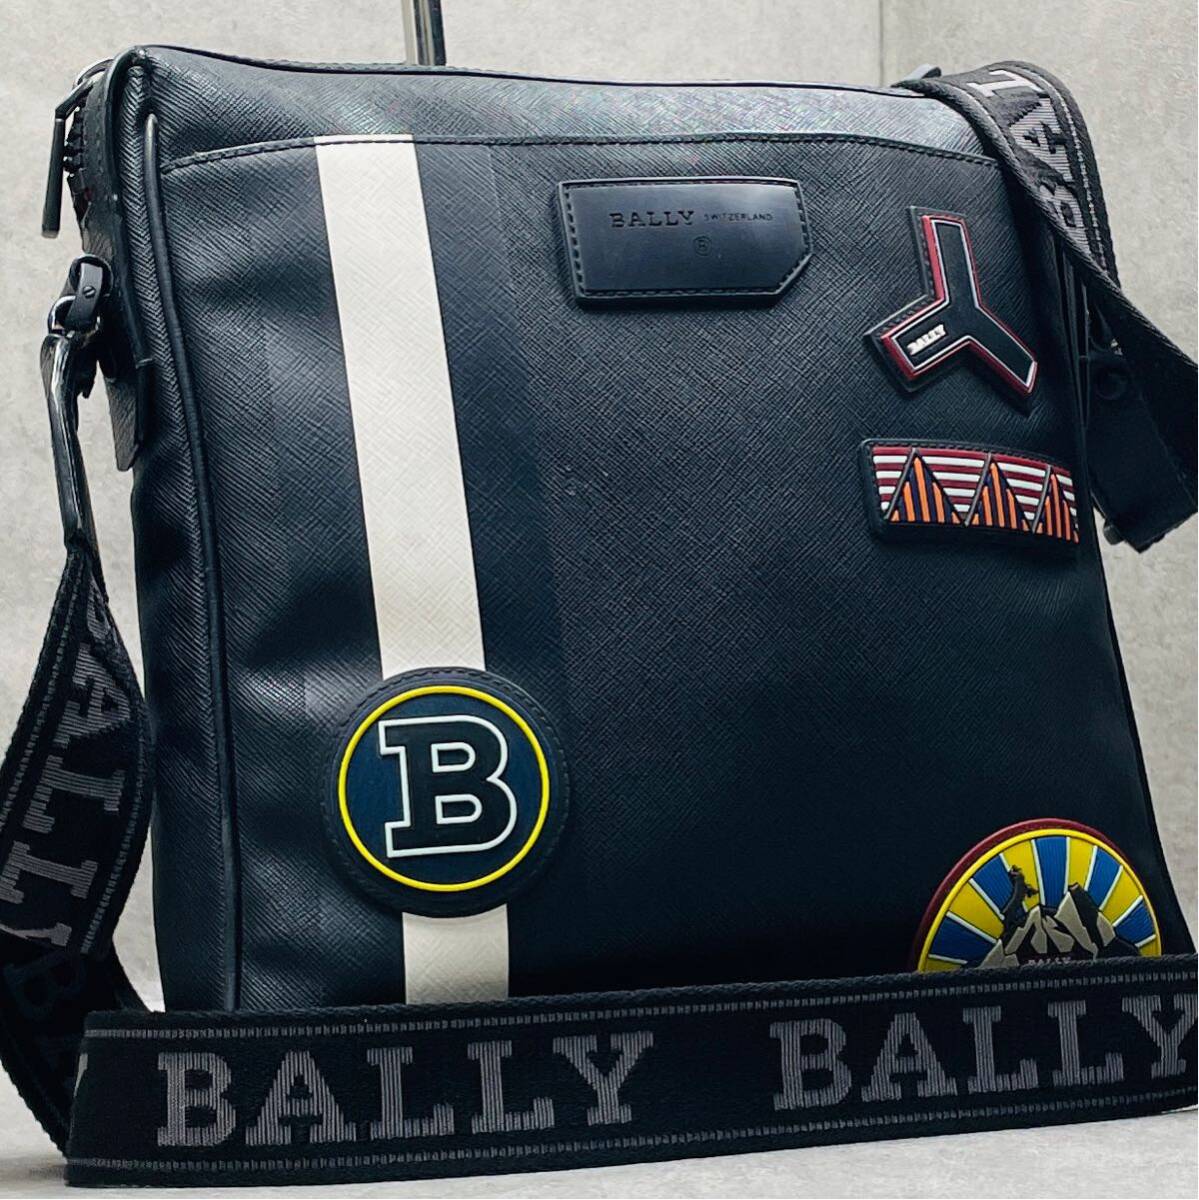  редкий / превосходный товар *BALLY Bally мужской бизнес сумка на плечо mesenja- Cross корпус нашивка tore spo кожа наклонный .. плечо .. чёрный 